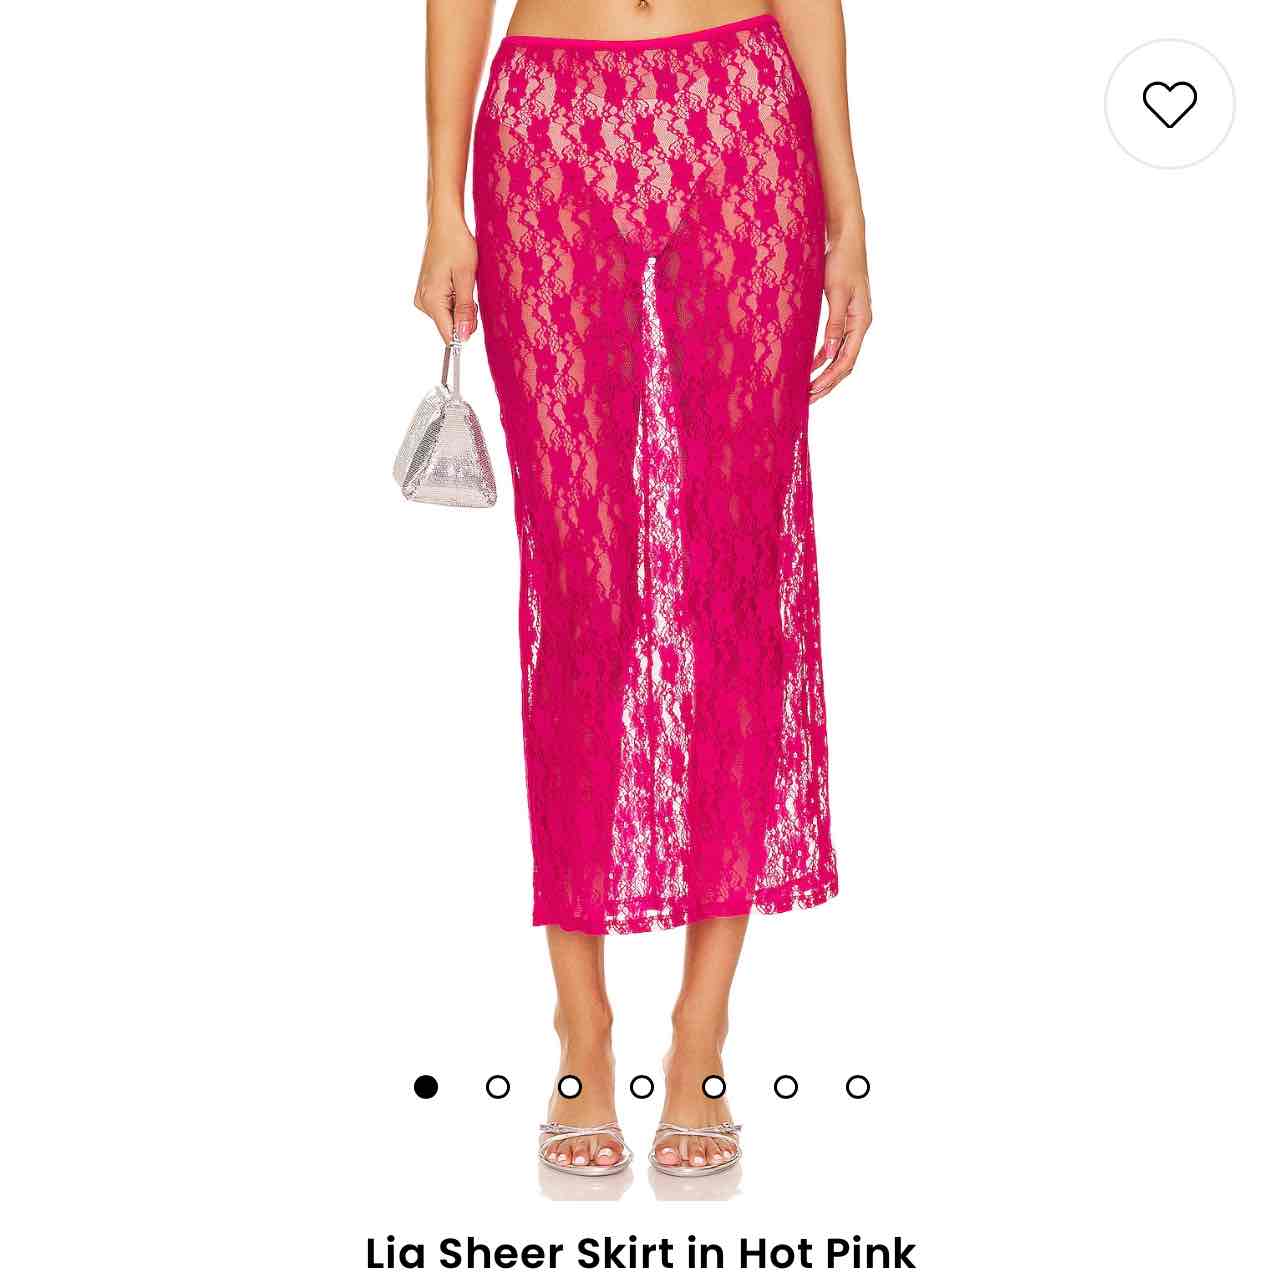 Lia Sheer Skirt